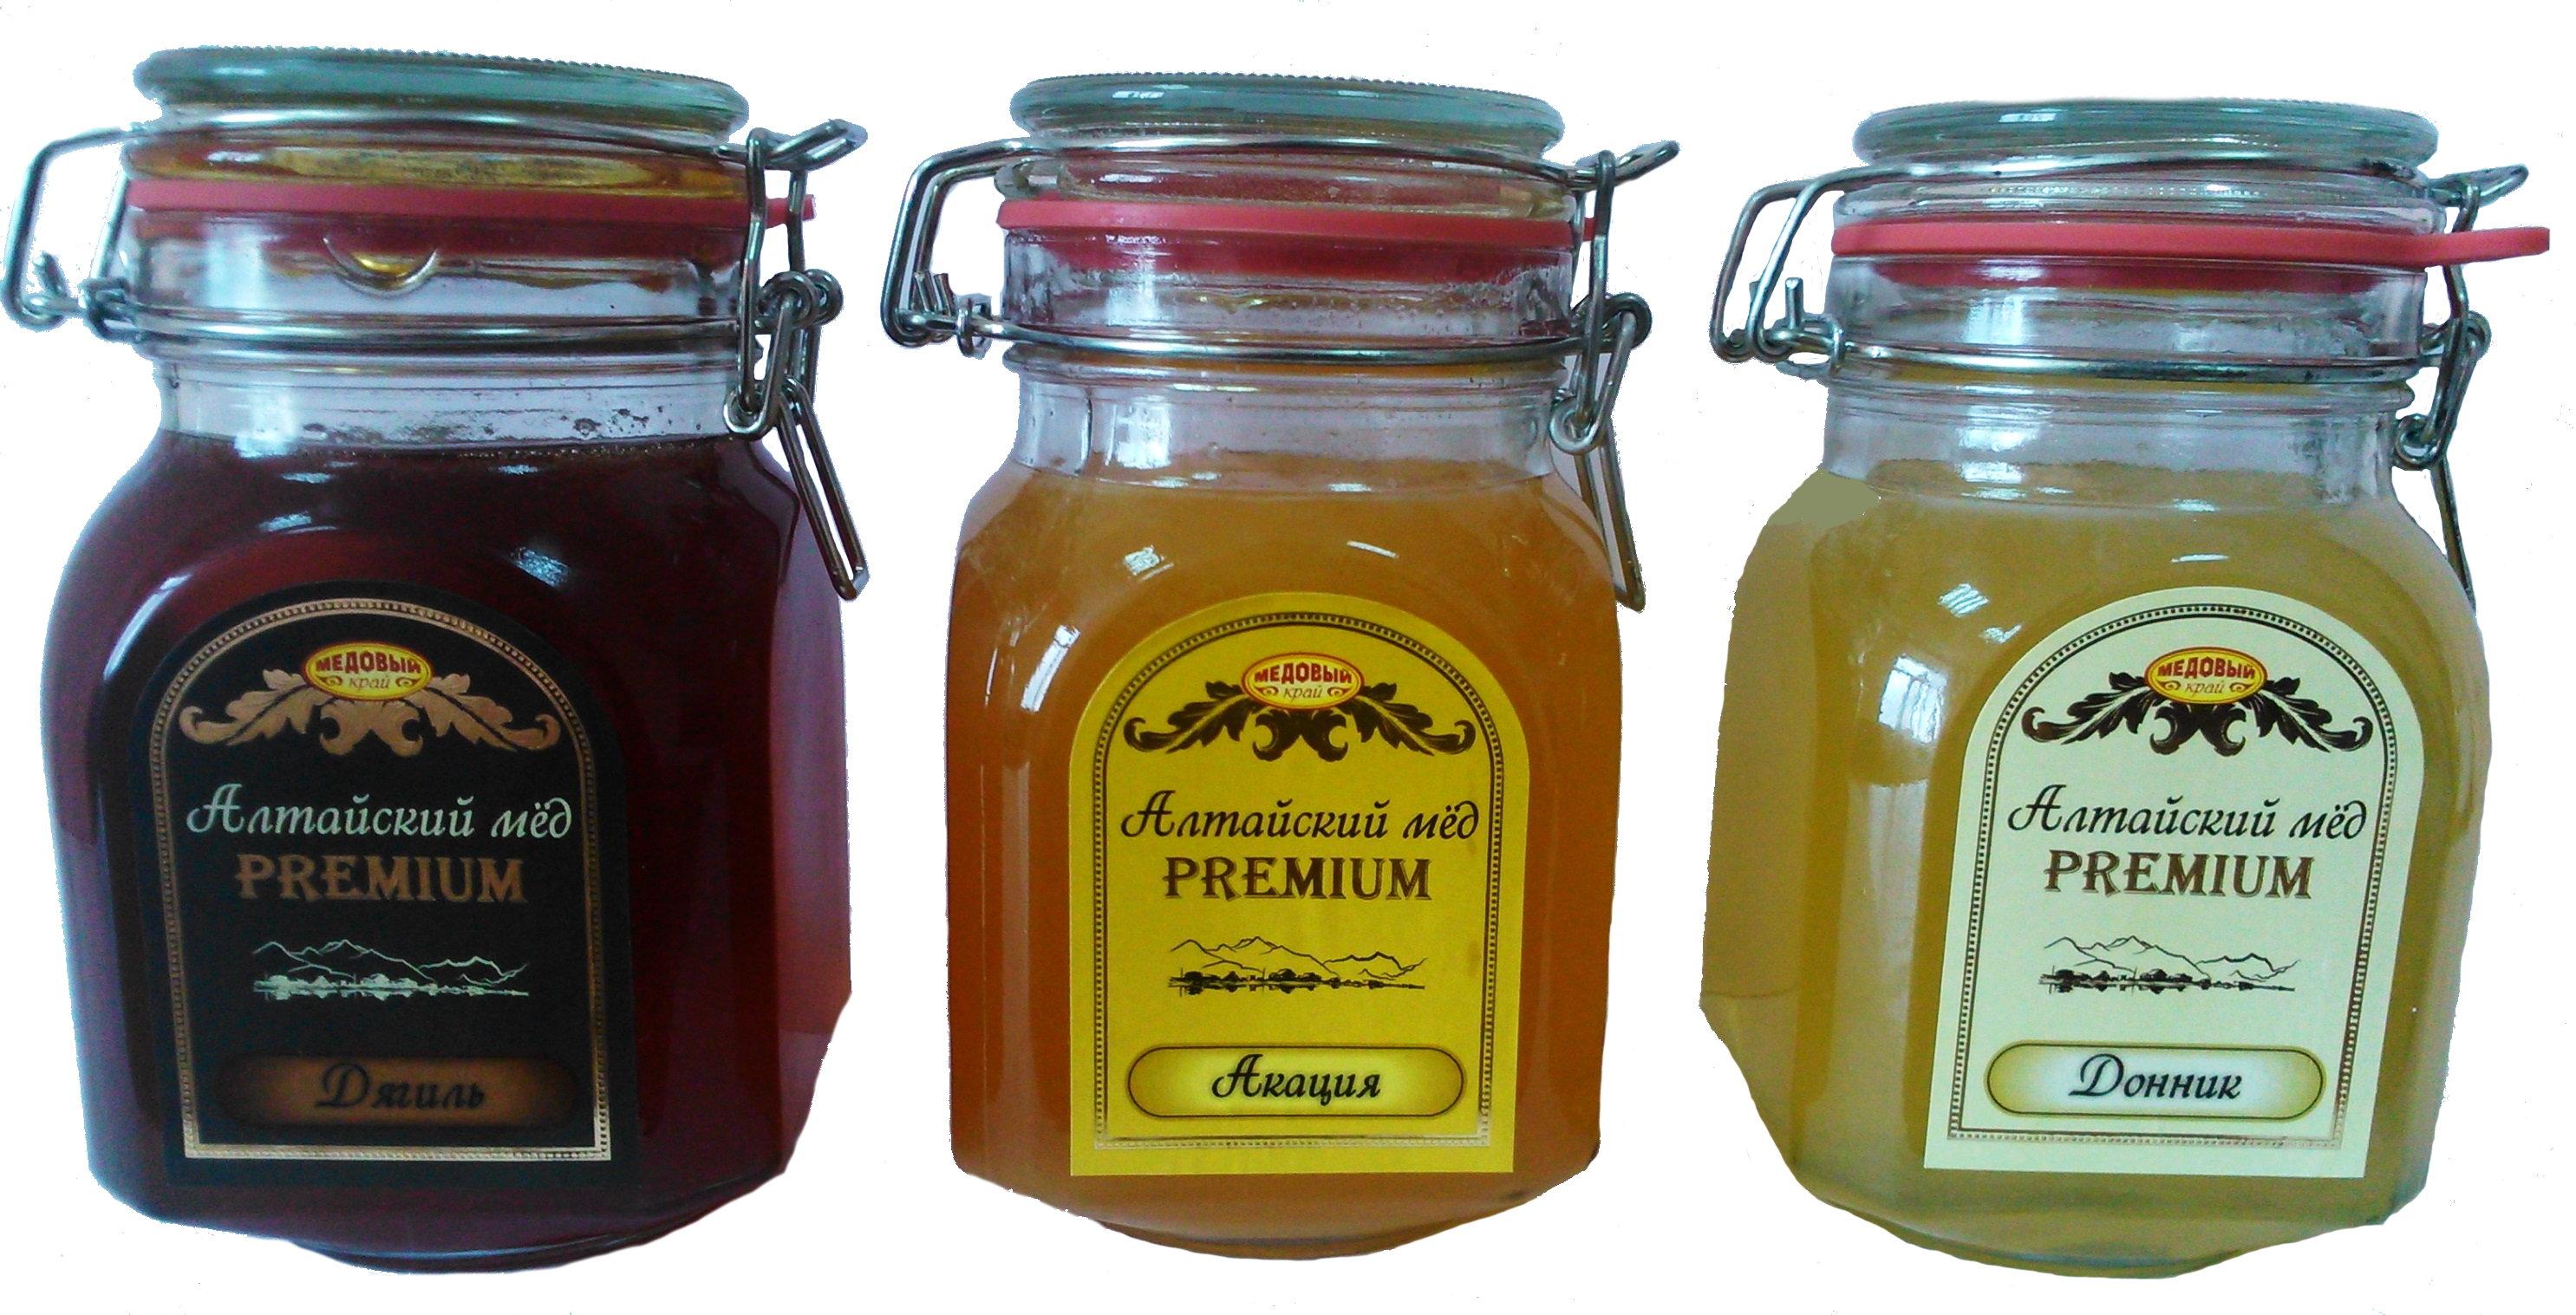 Купить мед в барнауле. Мёд натуральный. Алтайский мед. Натуральный Алтайский мёд. Мед Алтайский цветочный.